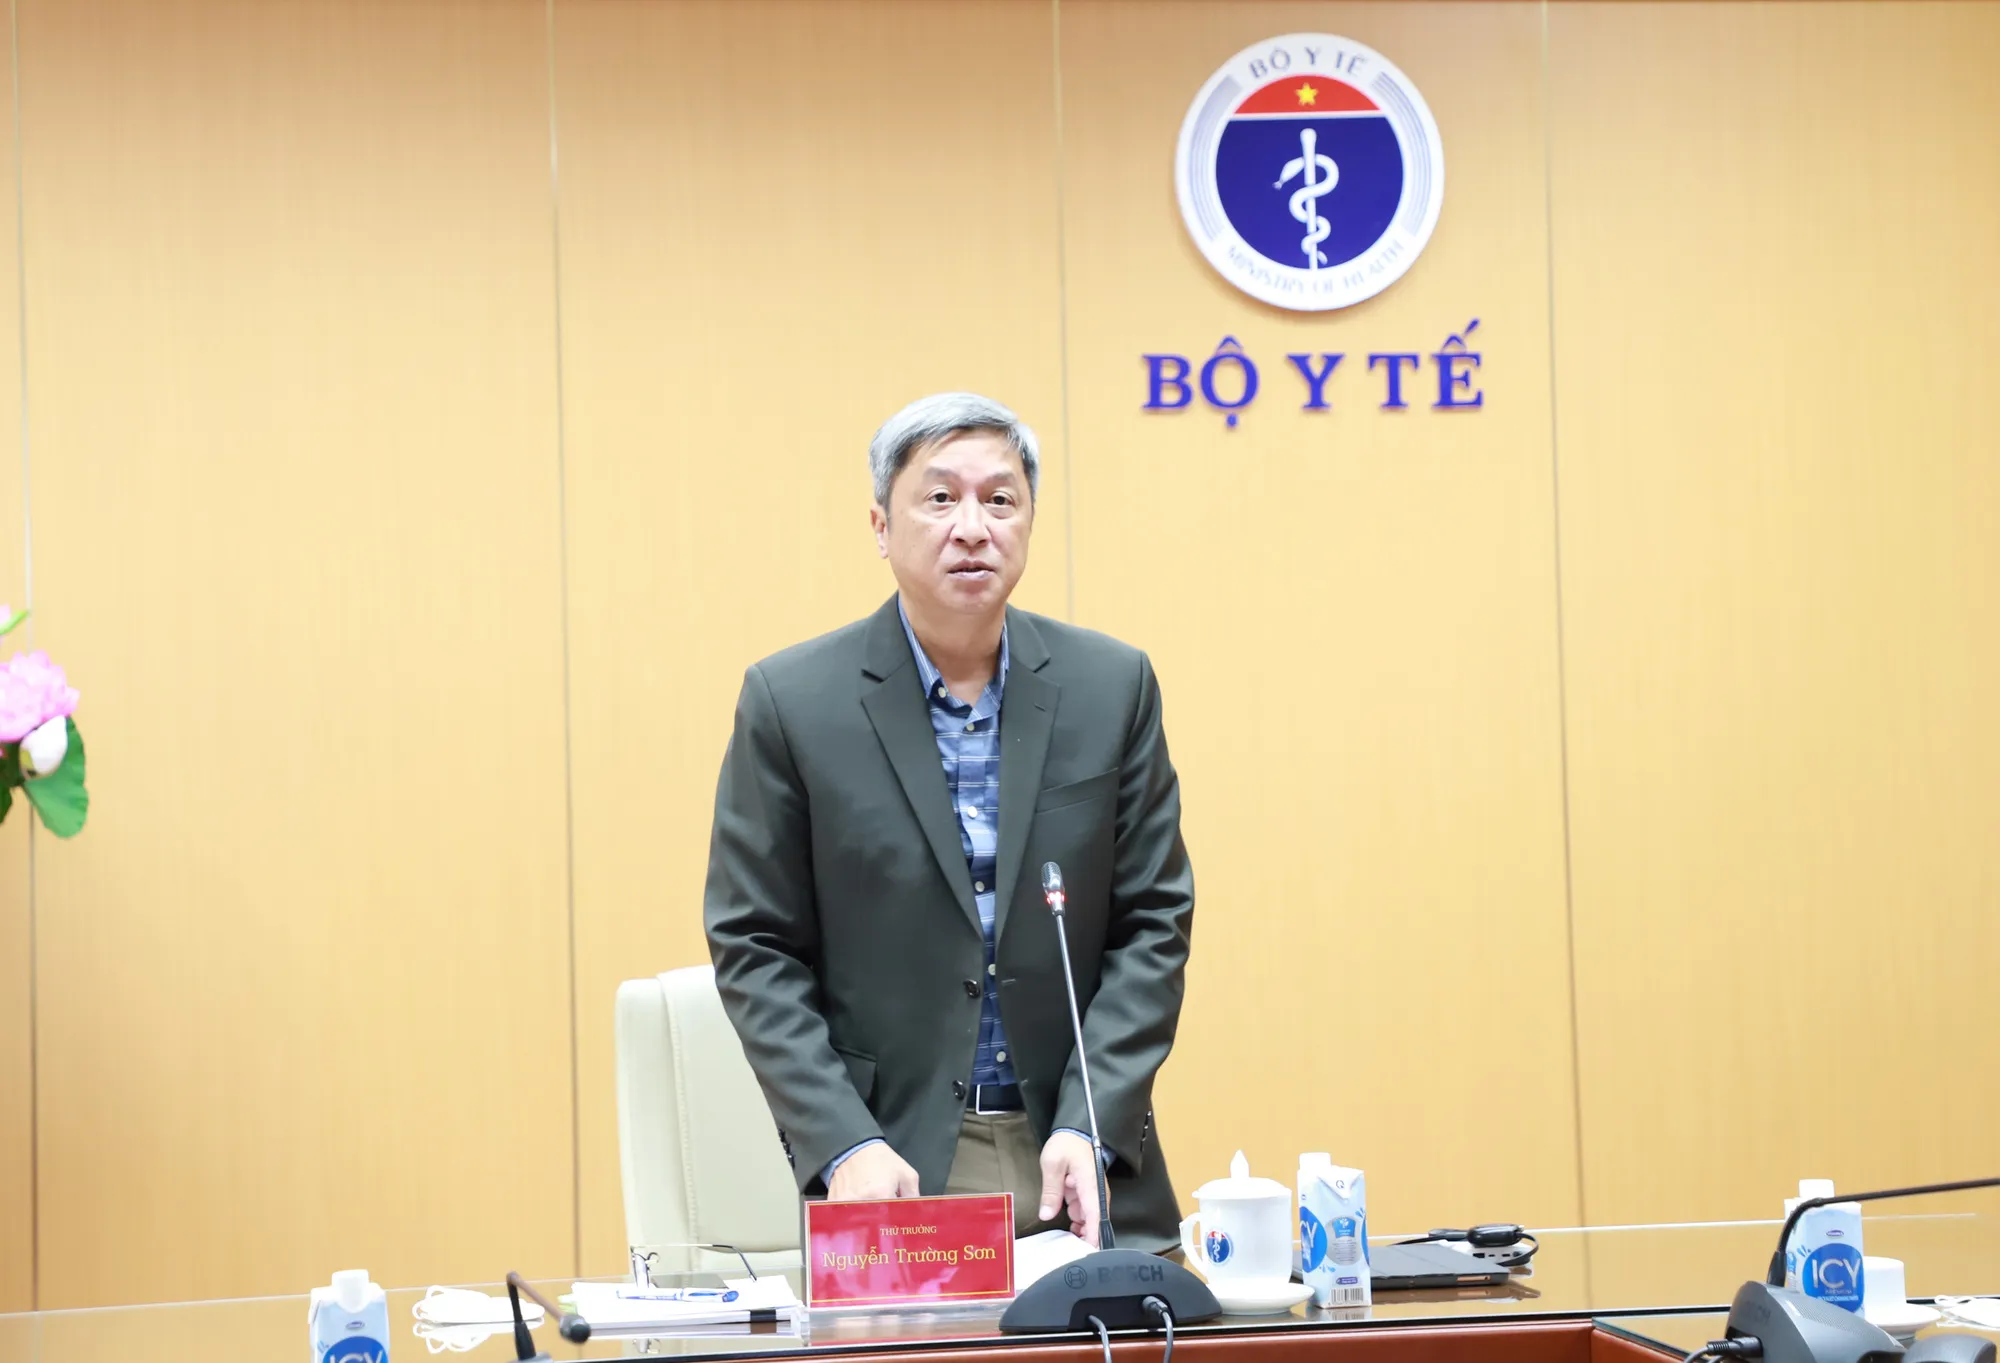 Thứ trưởng Nguyễn Trường Sơn thông tin: Bộ Y tế cũng chuẩn bị một số phương án về thuốc khác để phục vụ điều trị bệnh nhân COVID-19 như thuốc favipiravir, thuốc Avigan Bộ Y tế đã có kế hoạch phân bổ cho các địa phương